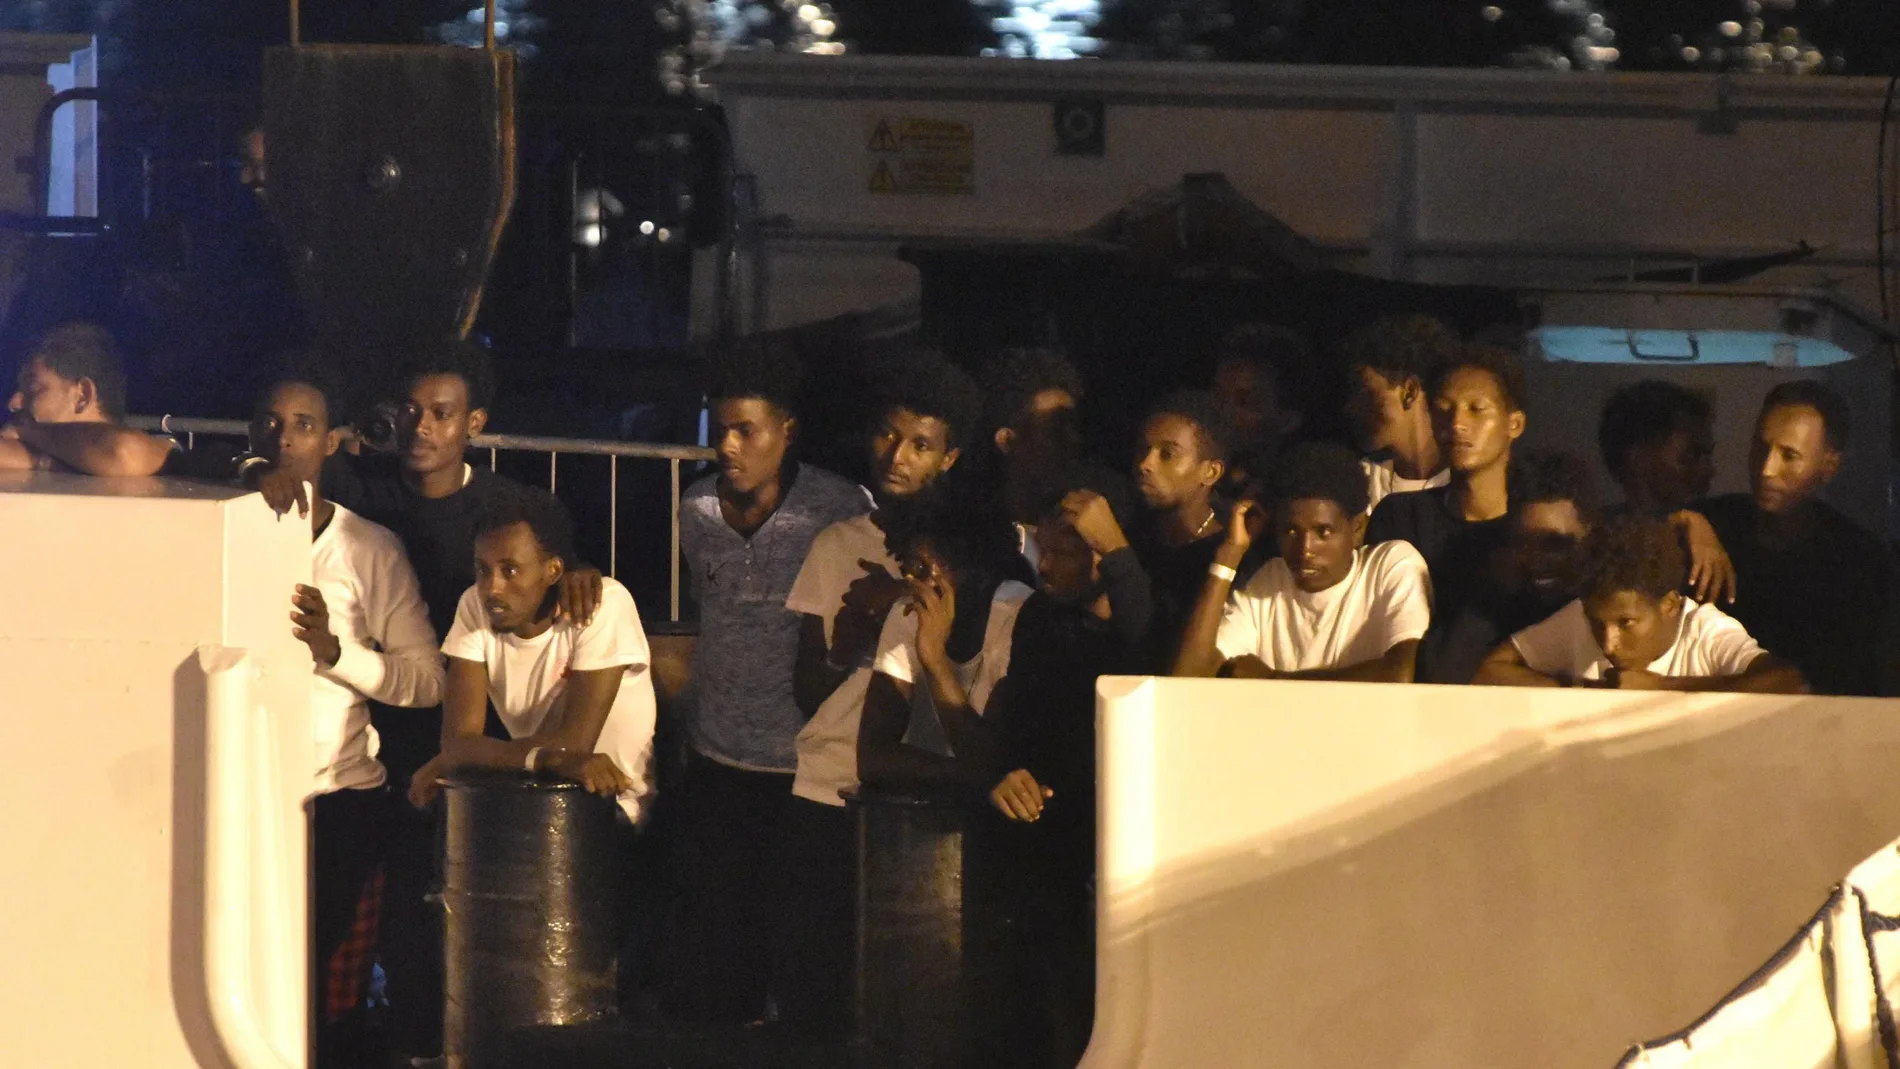 Los 138 migrantes que aún permanecían en la embarcación Diciotti